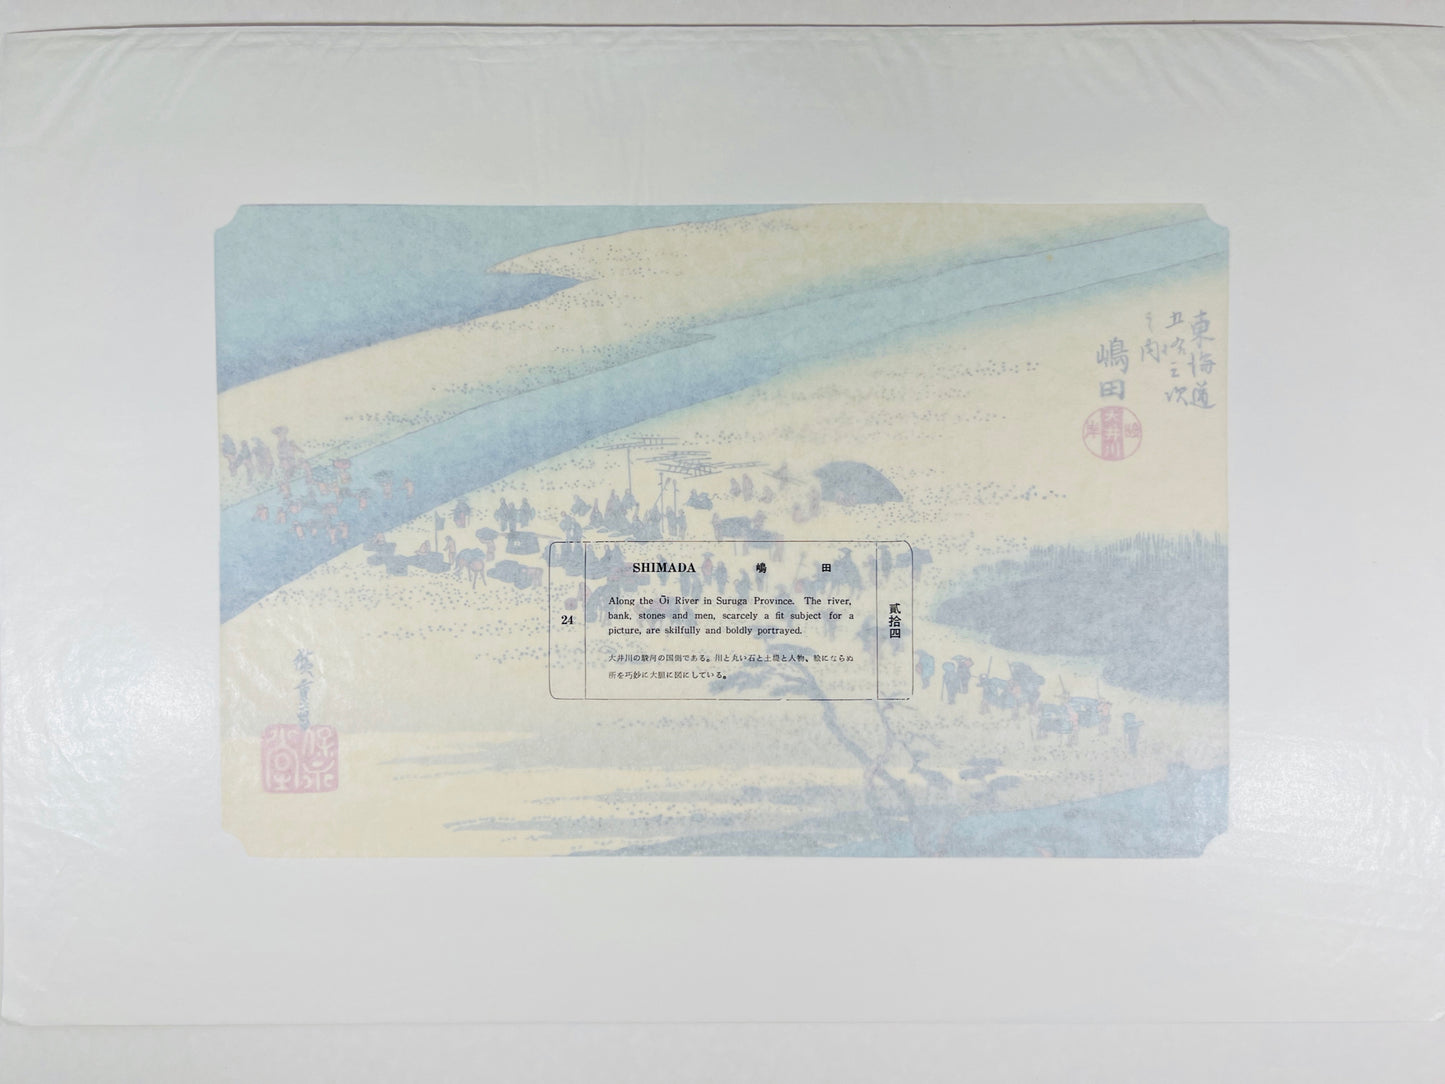 estampe japonaise de Hiroshige, papier cristal de protection